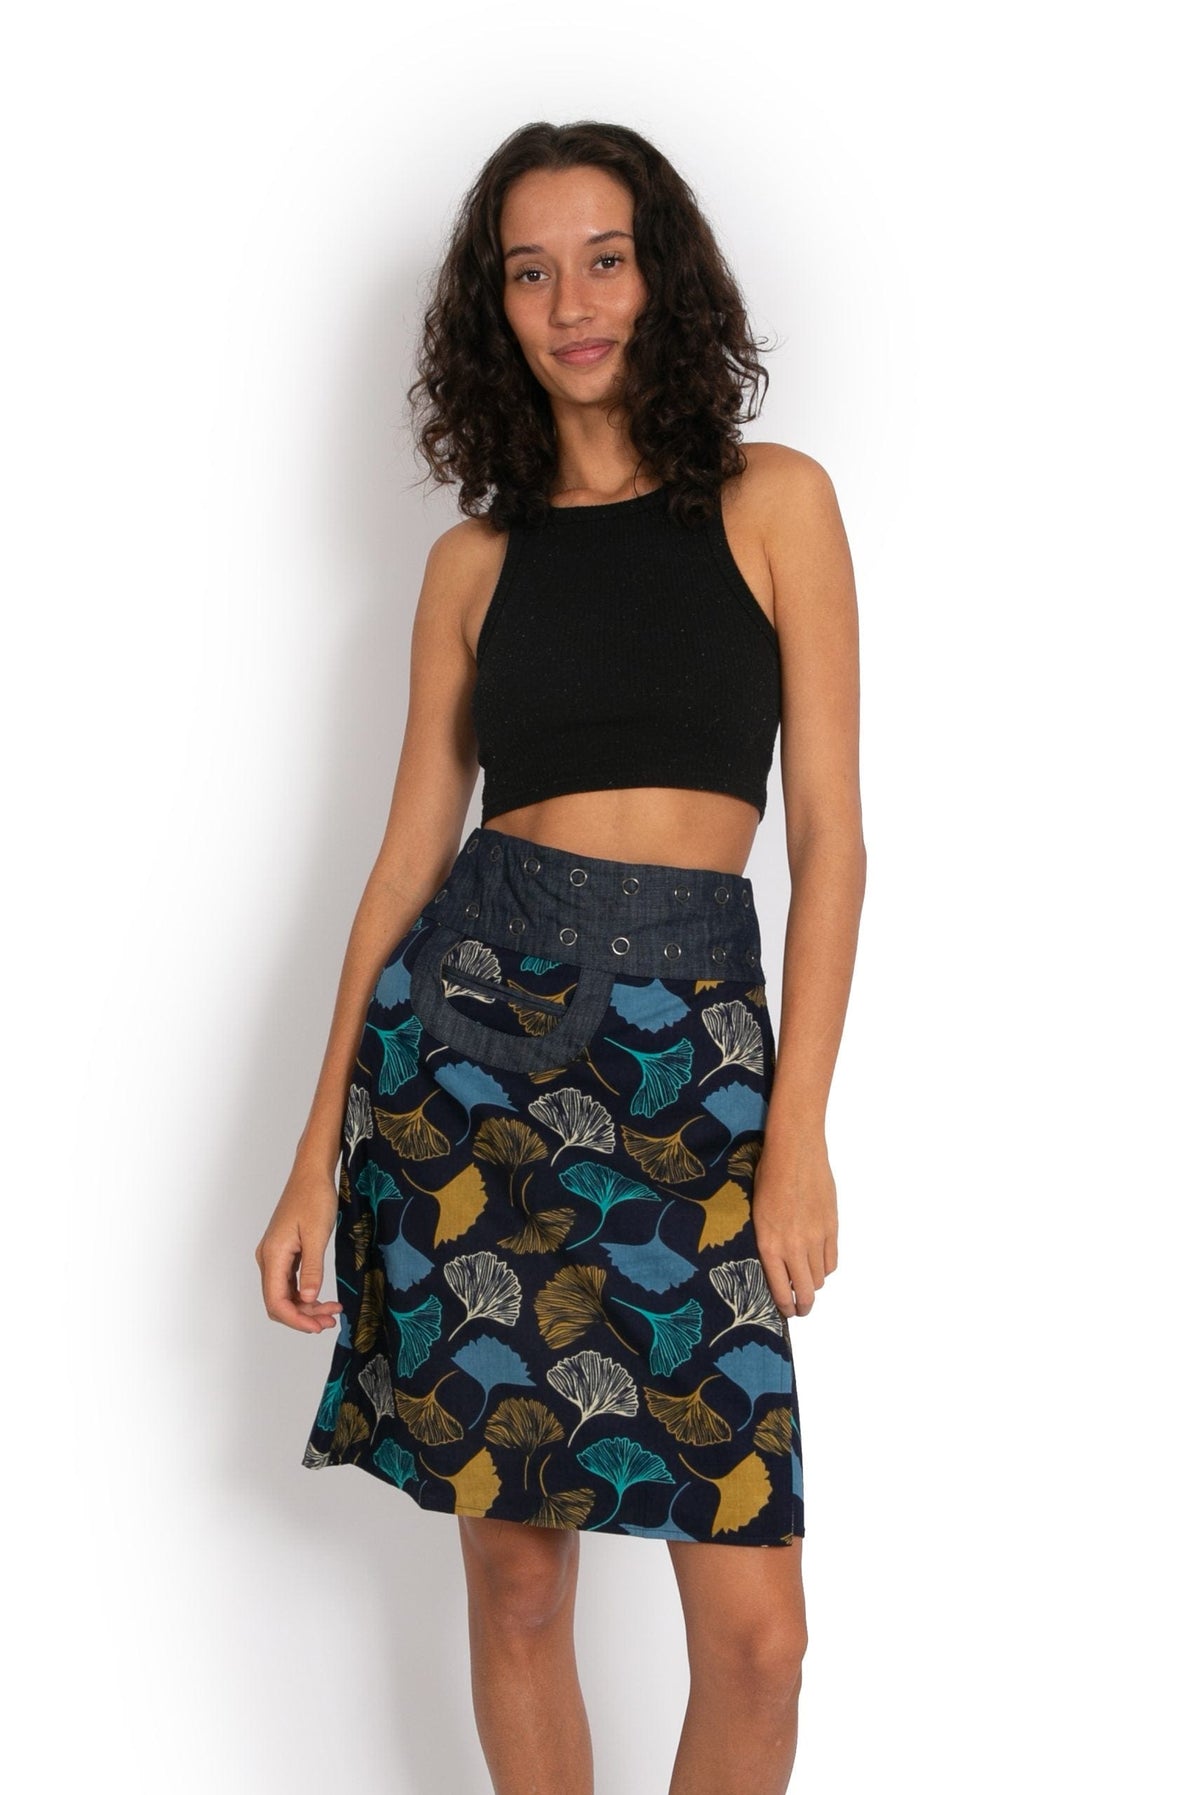 New Energy Reversible Skirt  - Navy Ginko Garden / Black Flower* - OM Designs - Splash Swimwear  - June23, OM Designs, skirts, Womens - Splash Swimwear 